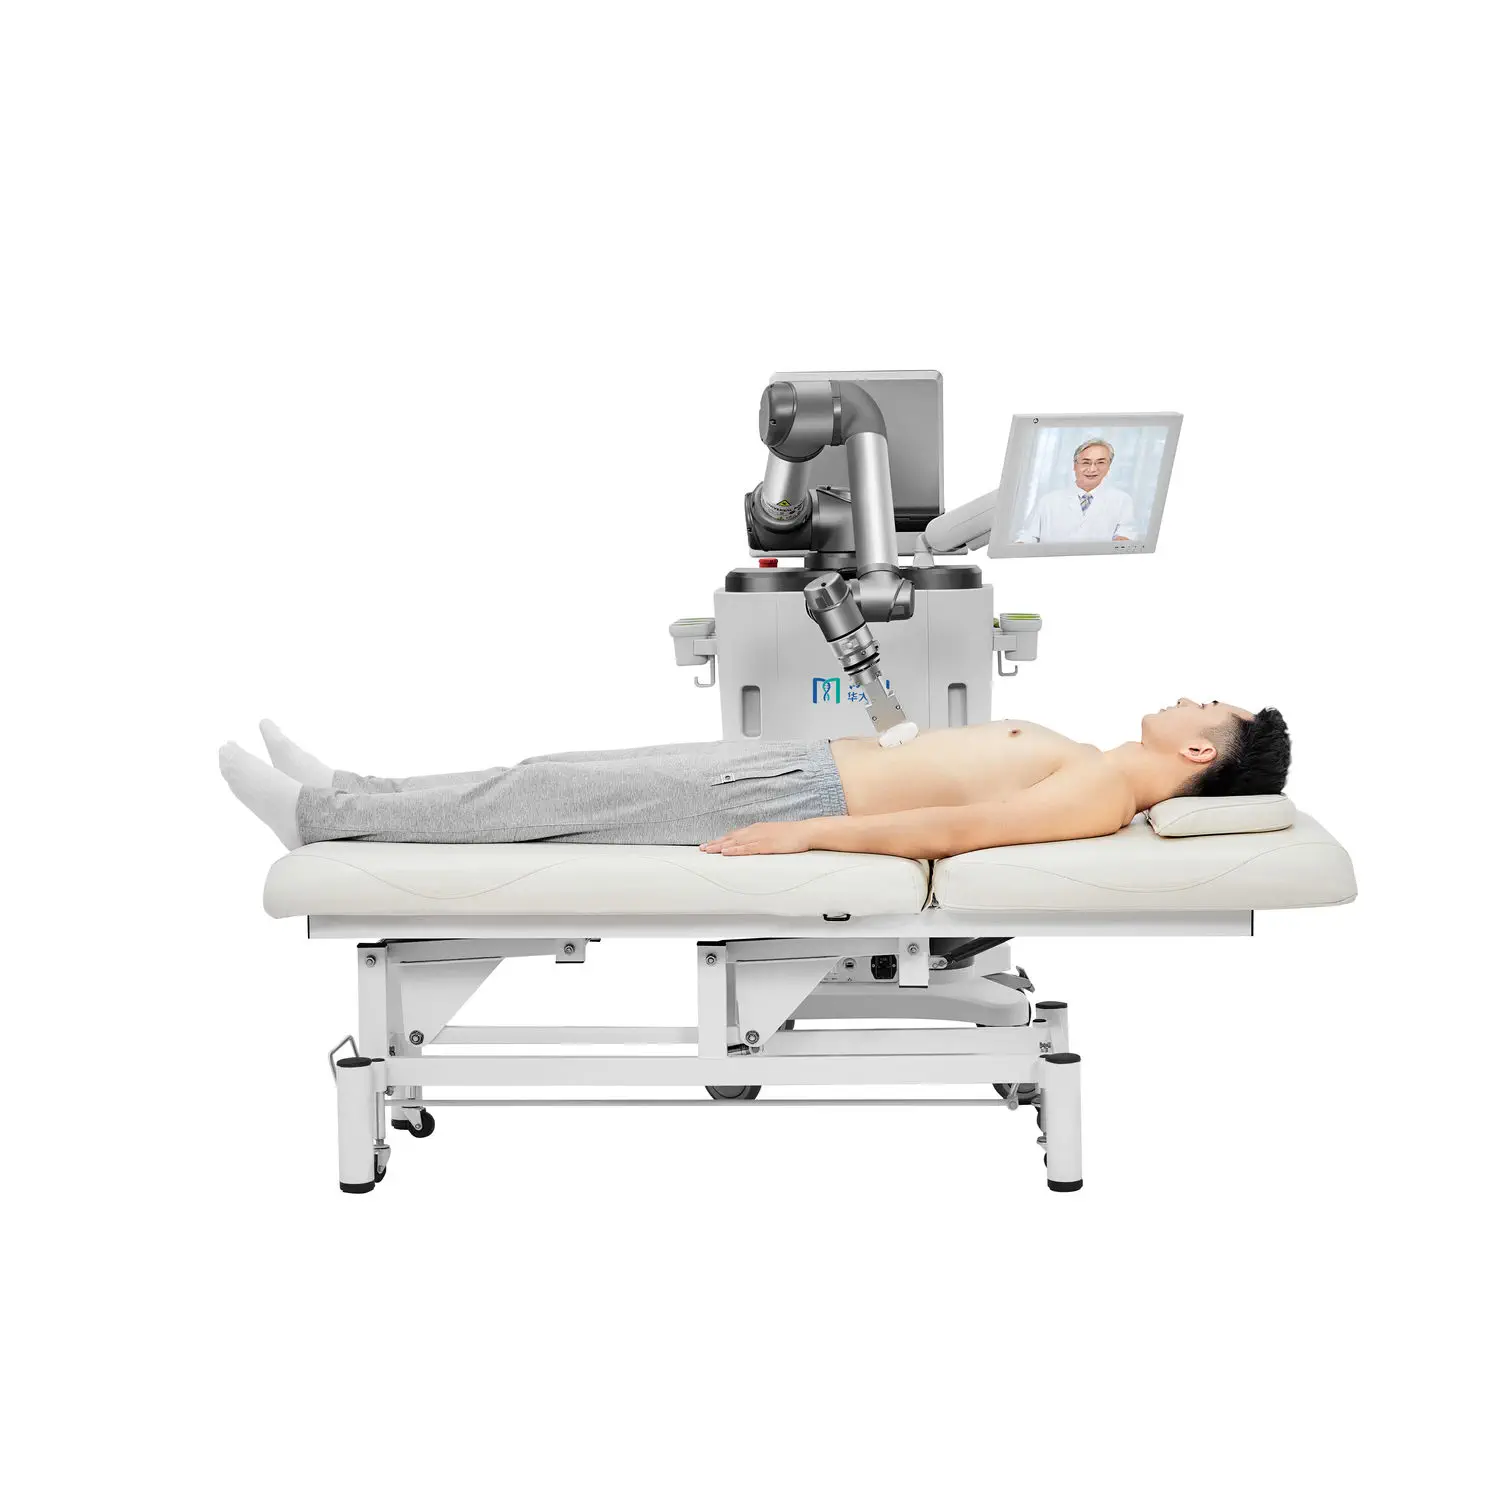 เครื่องตรวจอวัยวะภายในด้วยคลื่นเสียงความคมชัดสูง  Multi-purpose ultrasound imaging remote-controlled ultrasound system MGIUS  MGI Tech